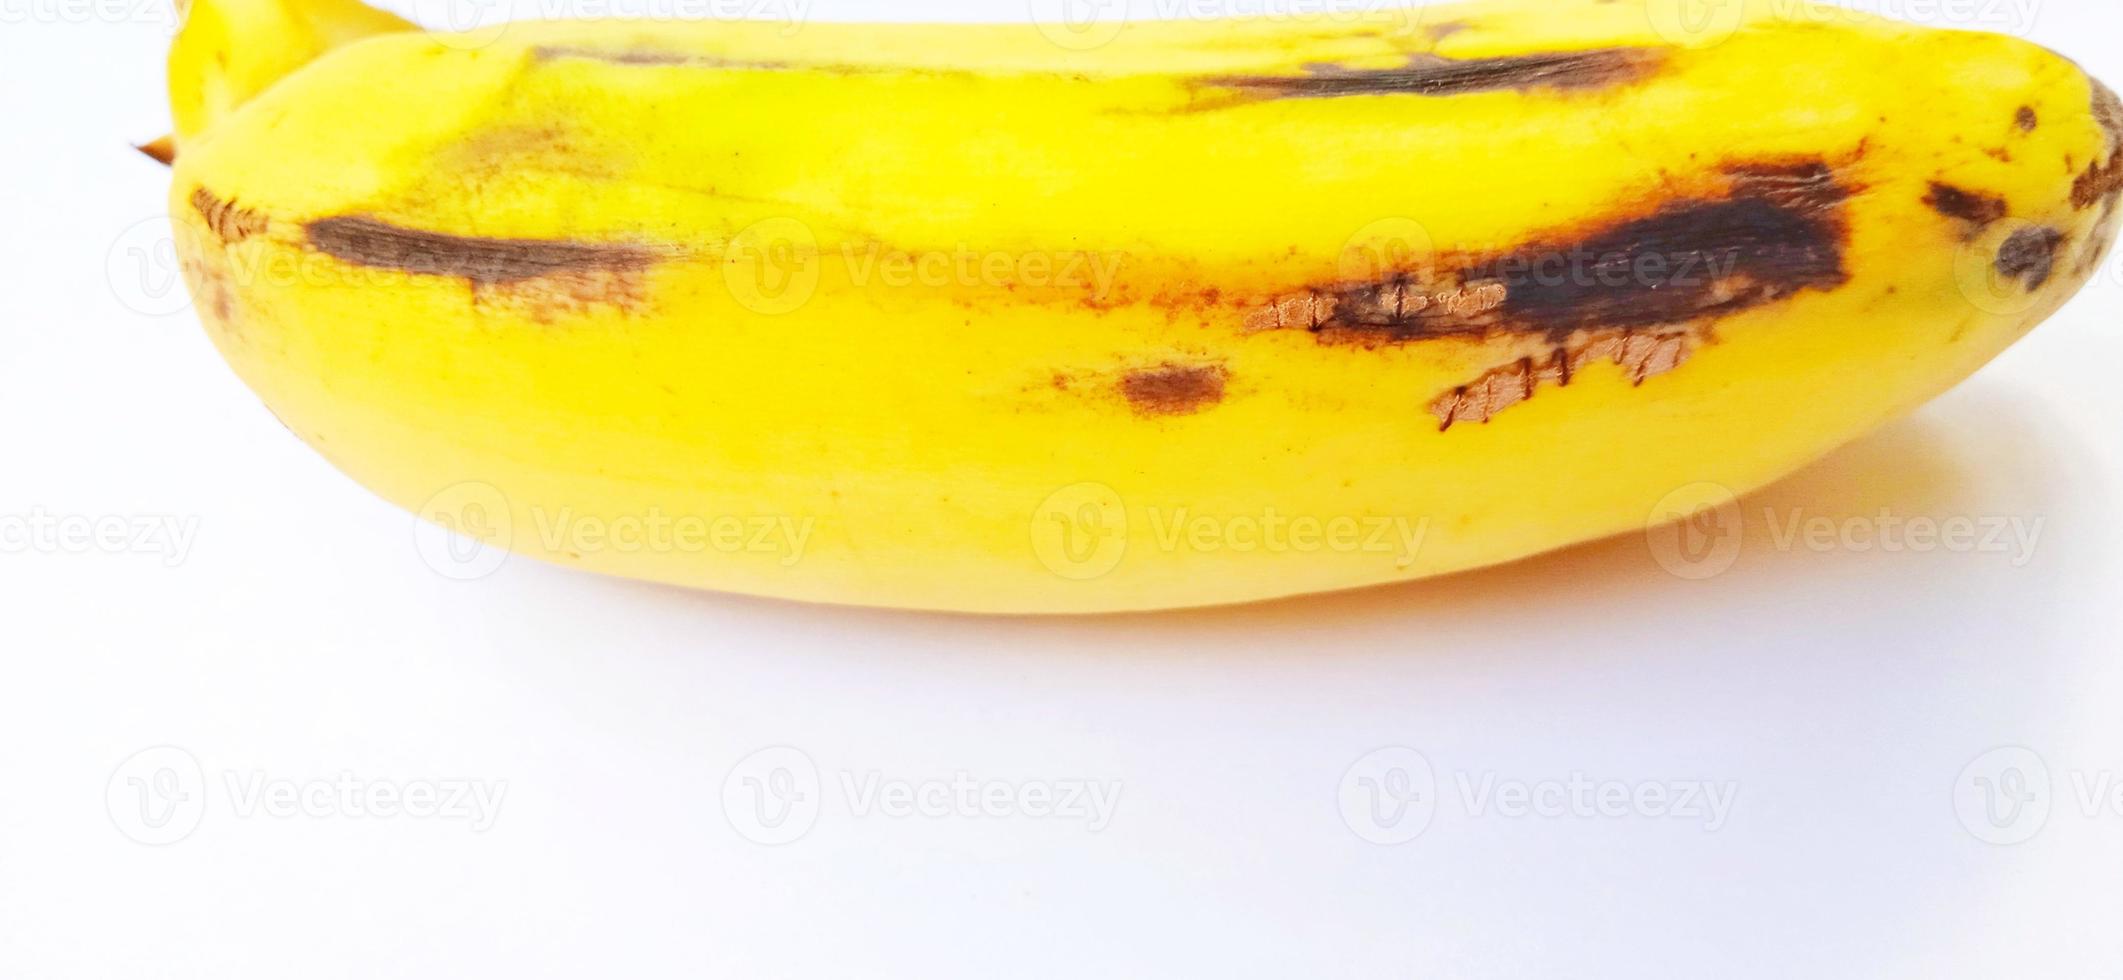 en isolerad gul mogen bananfrukt på den grå bakgrunden. lämplig för affisch, bakgrund, reklam, jordbruksföretag och industri, etc. foto